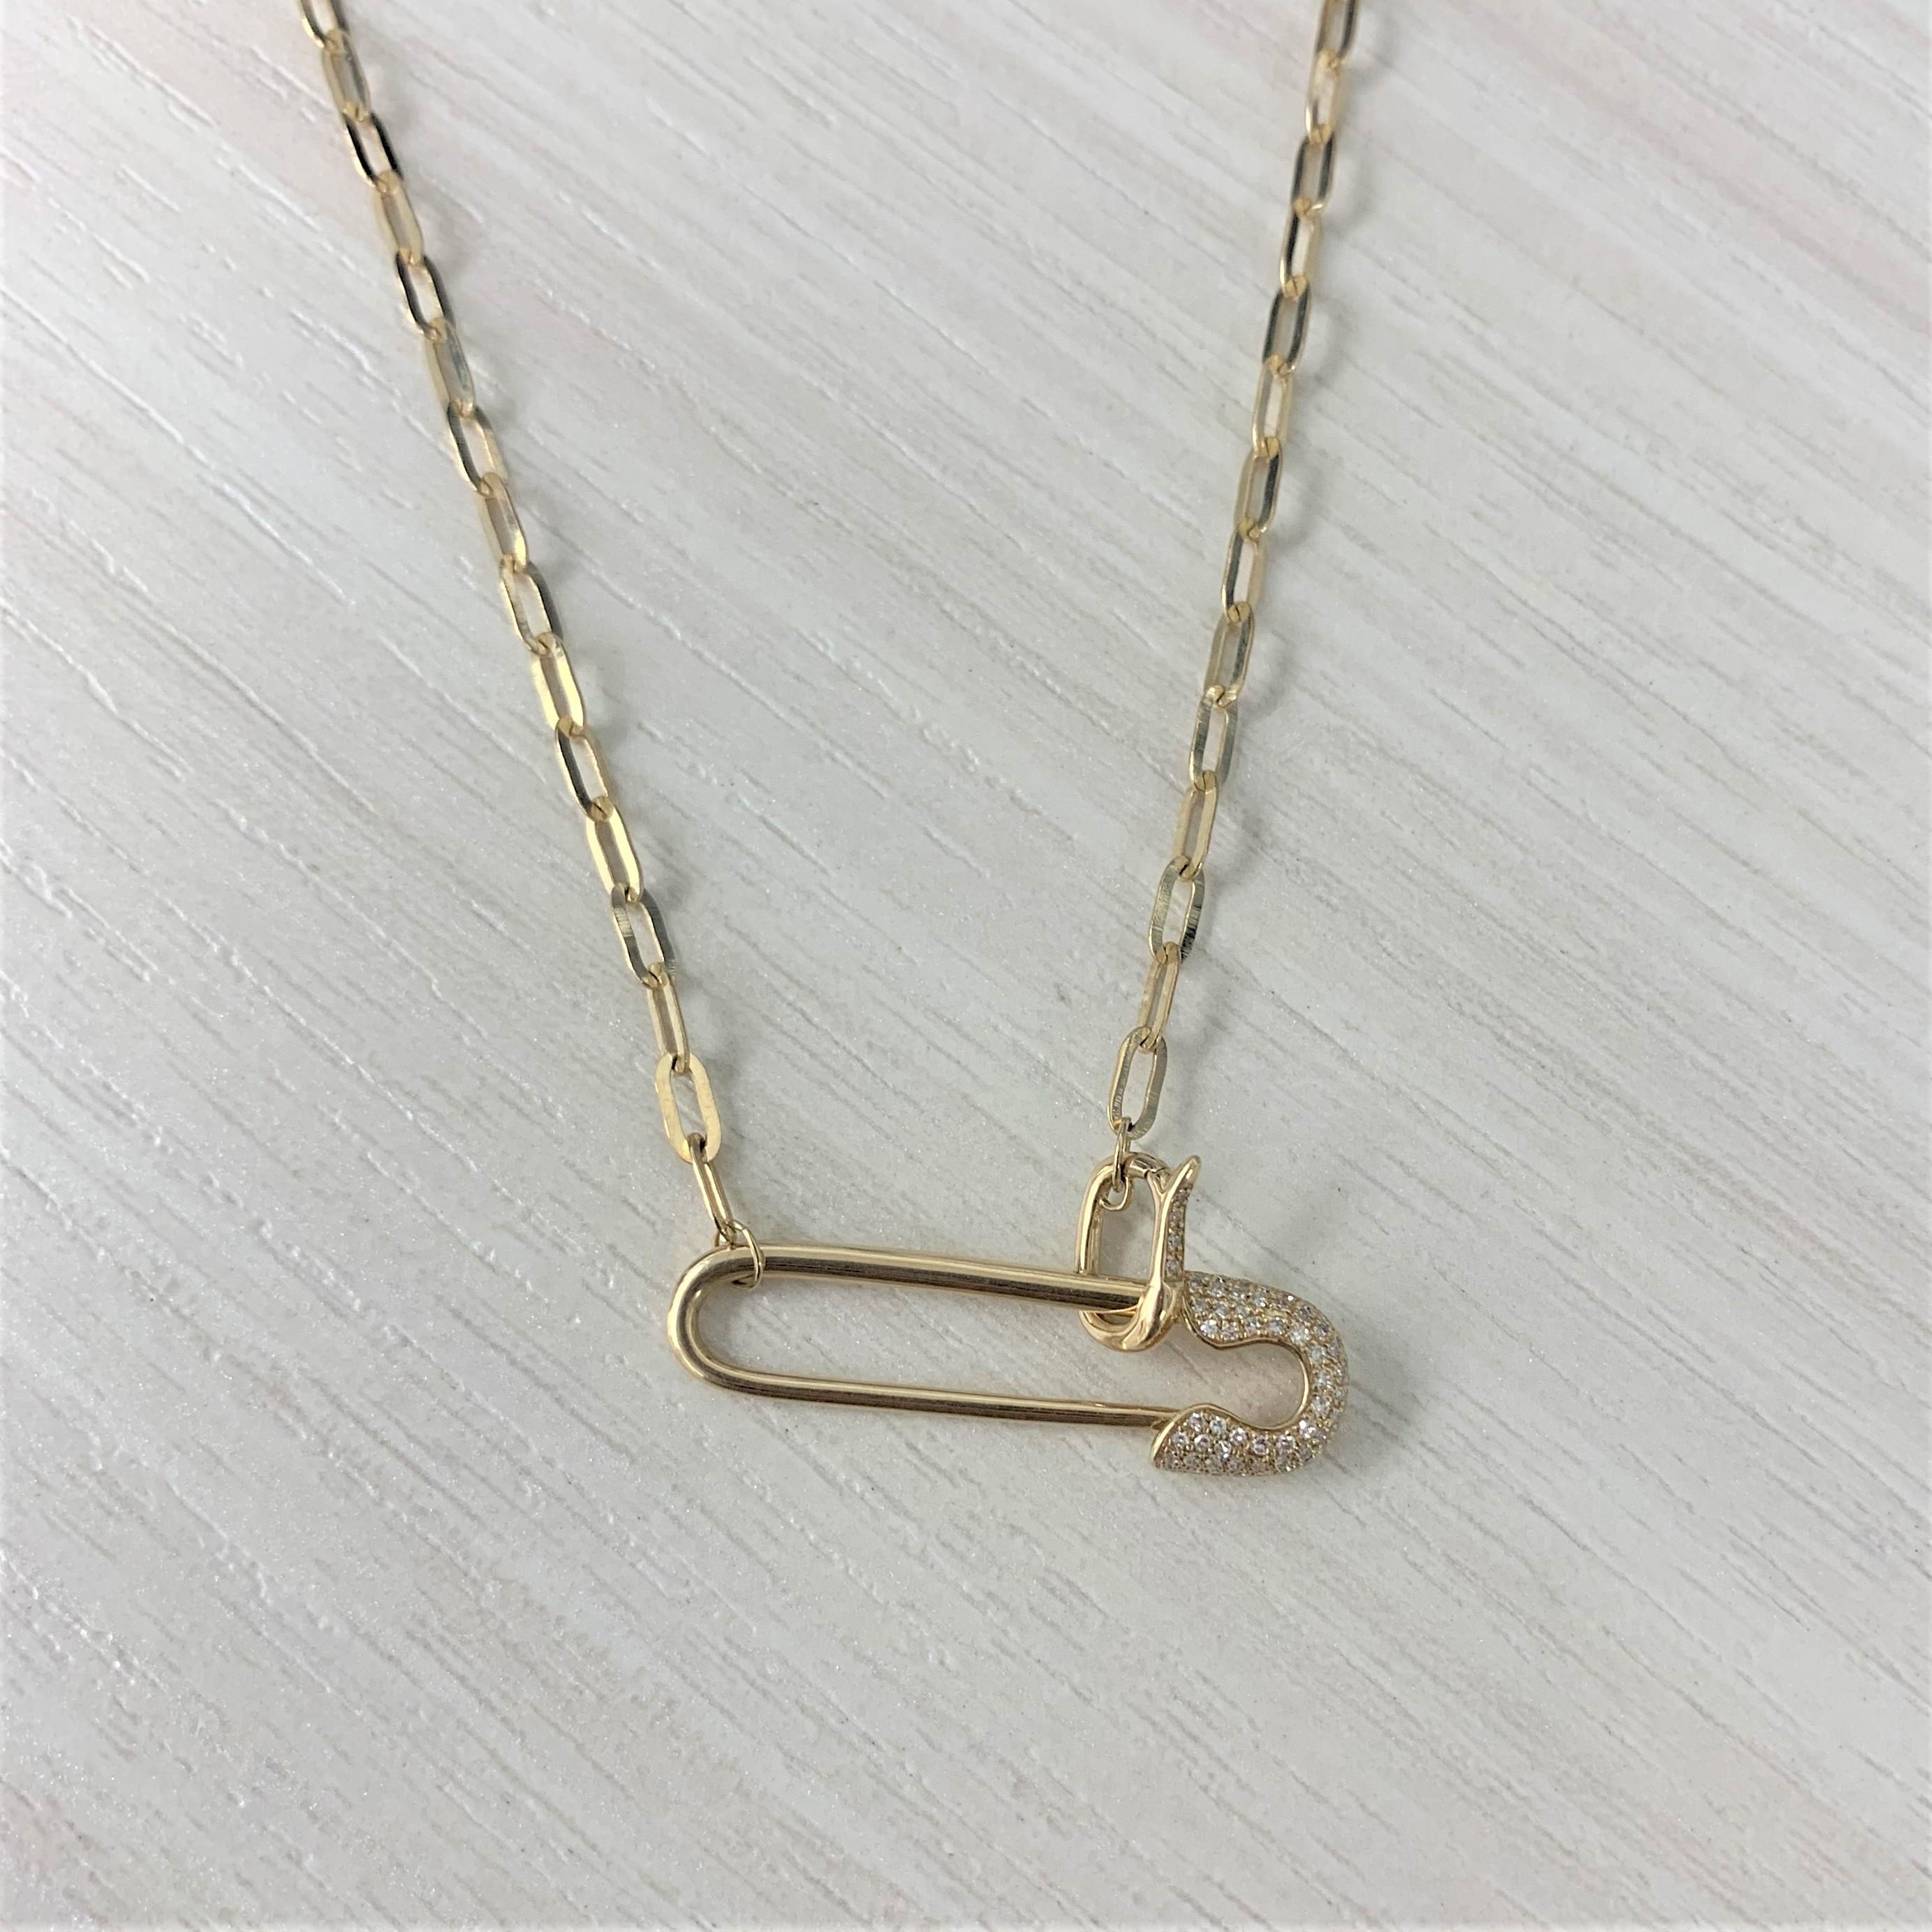 Ergänzen Sie Ihre Garderobe mit dieser bezaubernden Saftey Pin-Halskette und verleihen Sie ihr den besonderen Glamour! Diese Halskette aus 14-karätigem Gelbgold ist mit 0,12 Karat runden weißen Naturdiamanten besetzt. Das Goldgewicht beträgt 5,46